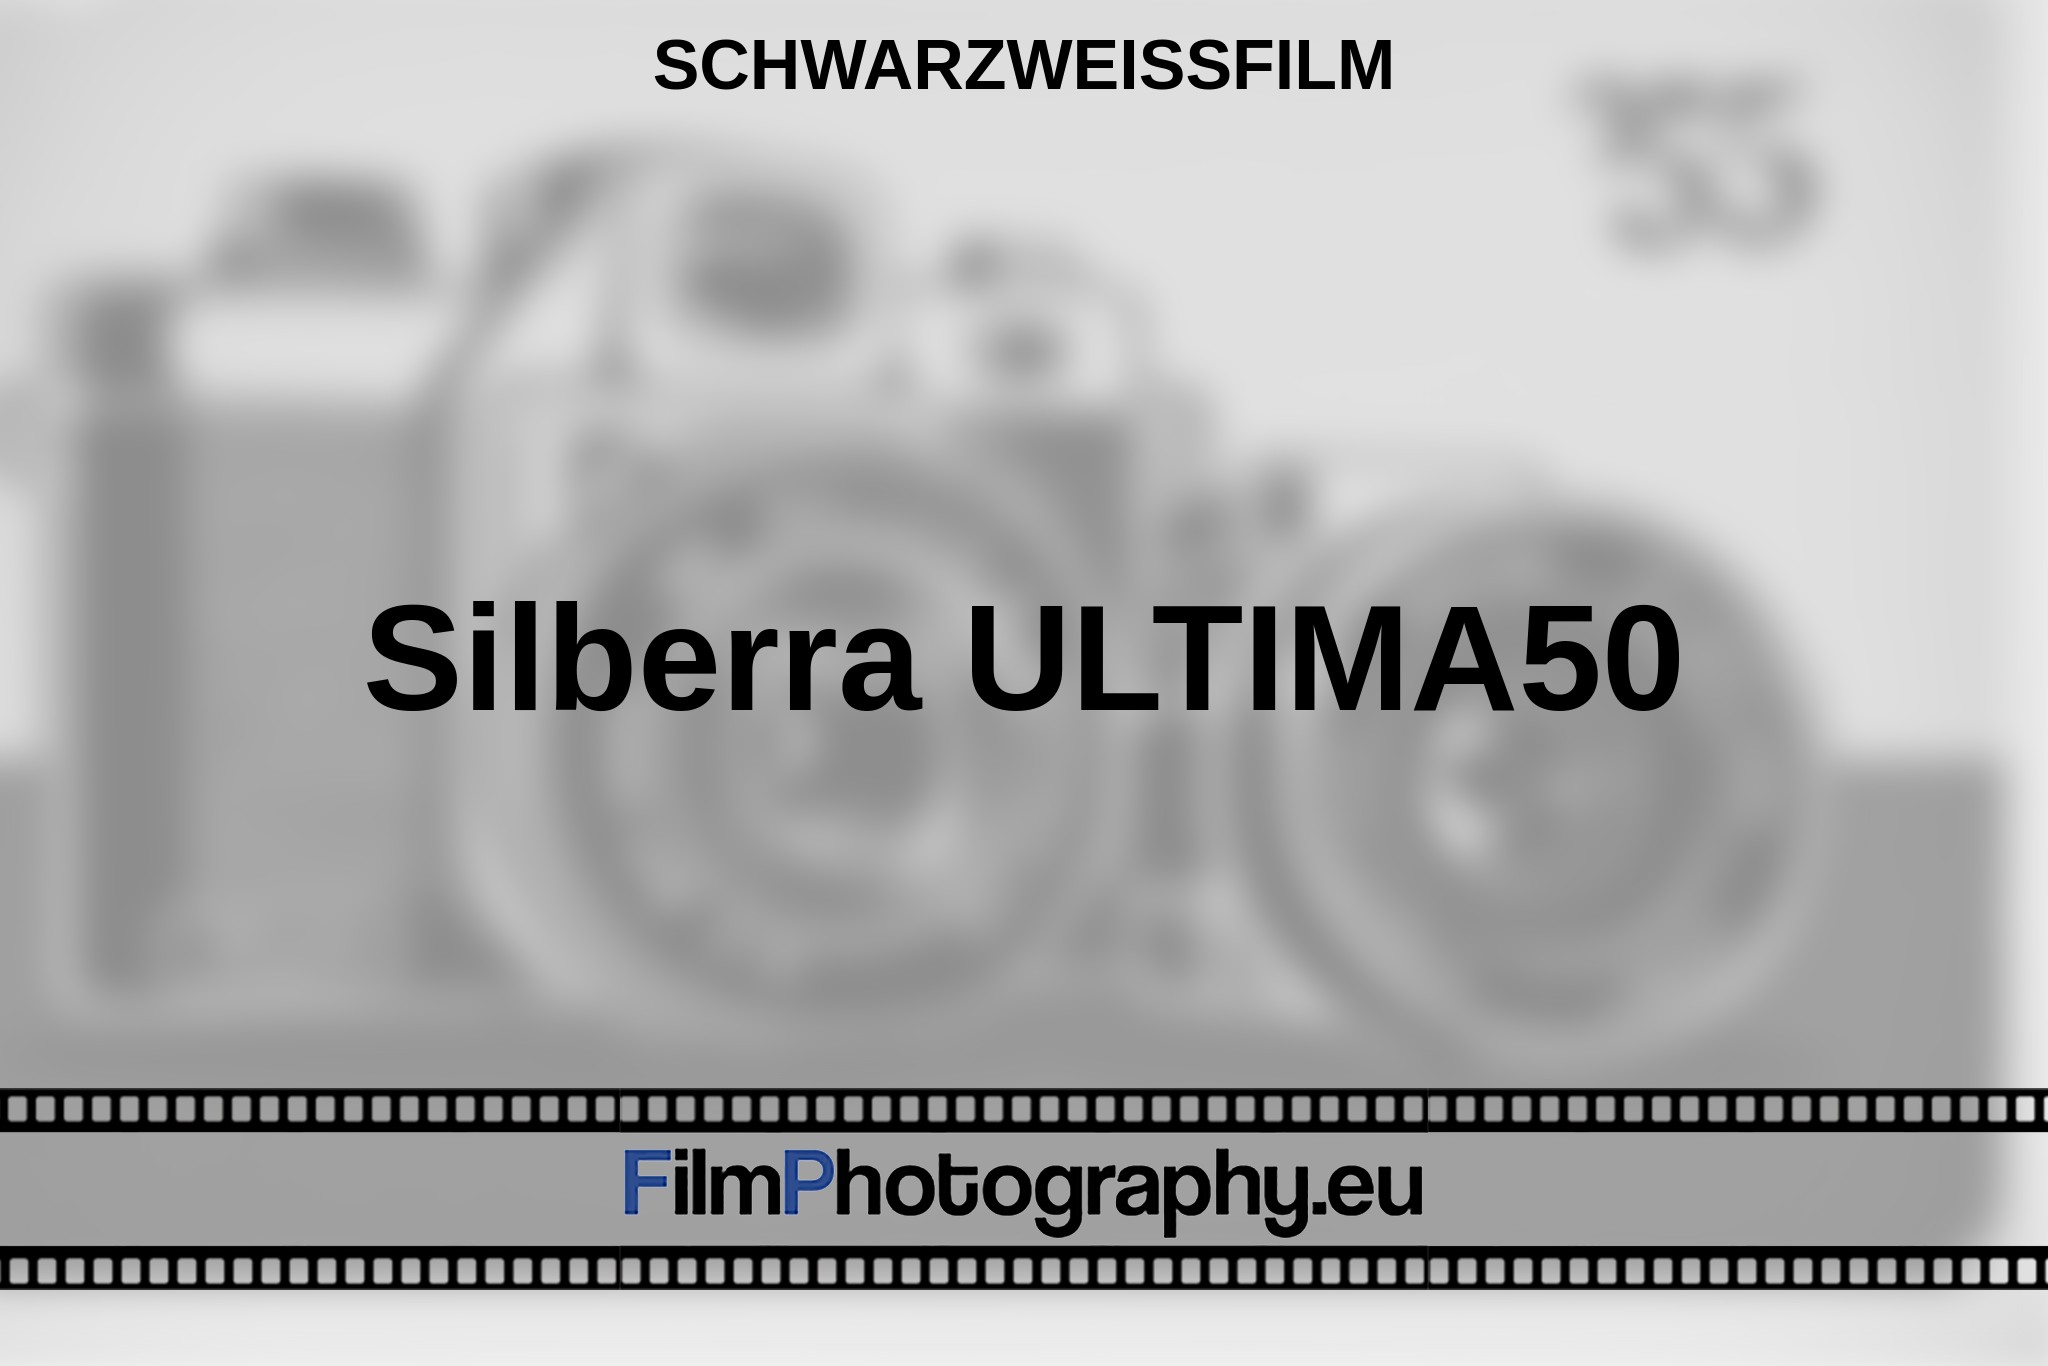 silberra-ultima50-schwarzweißfilm-bnv.jpg